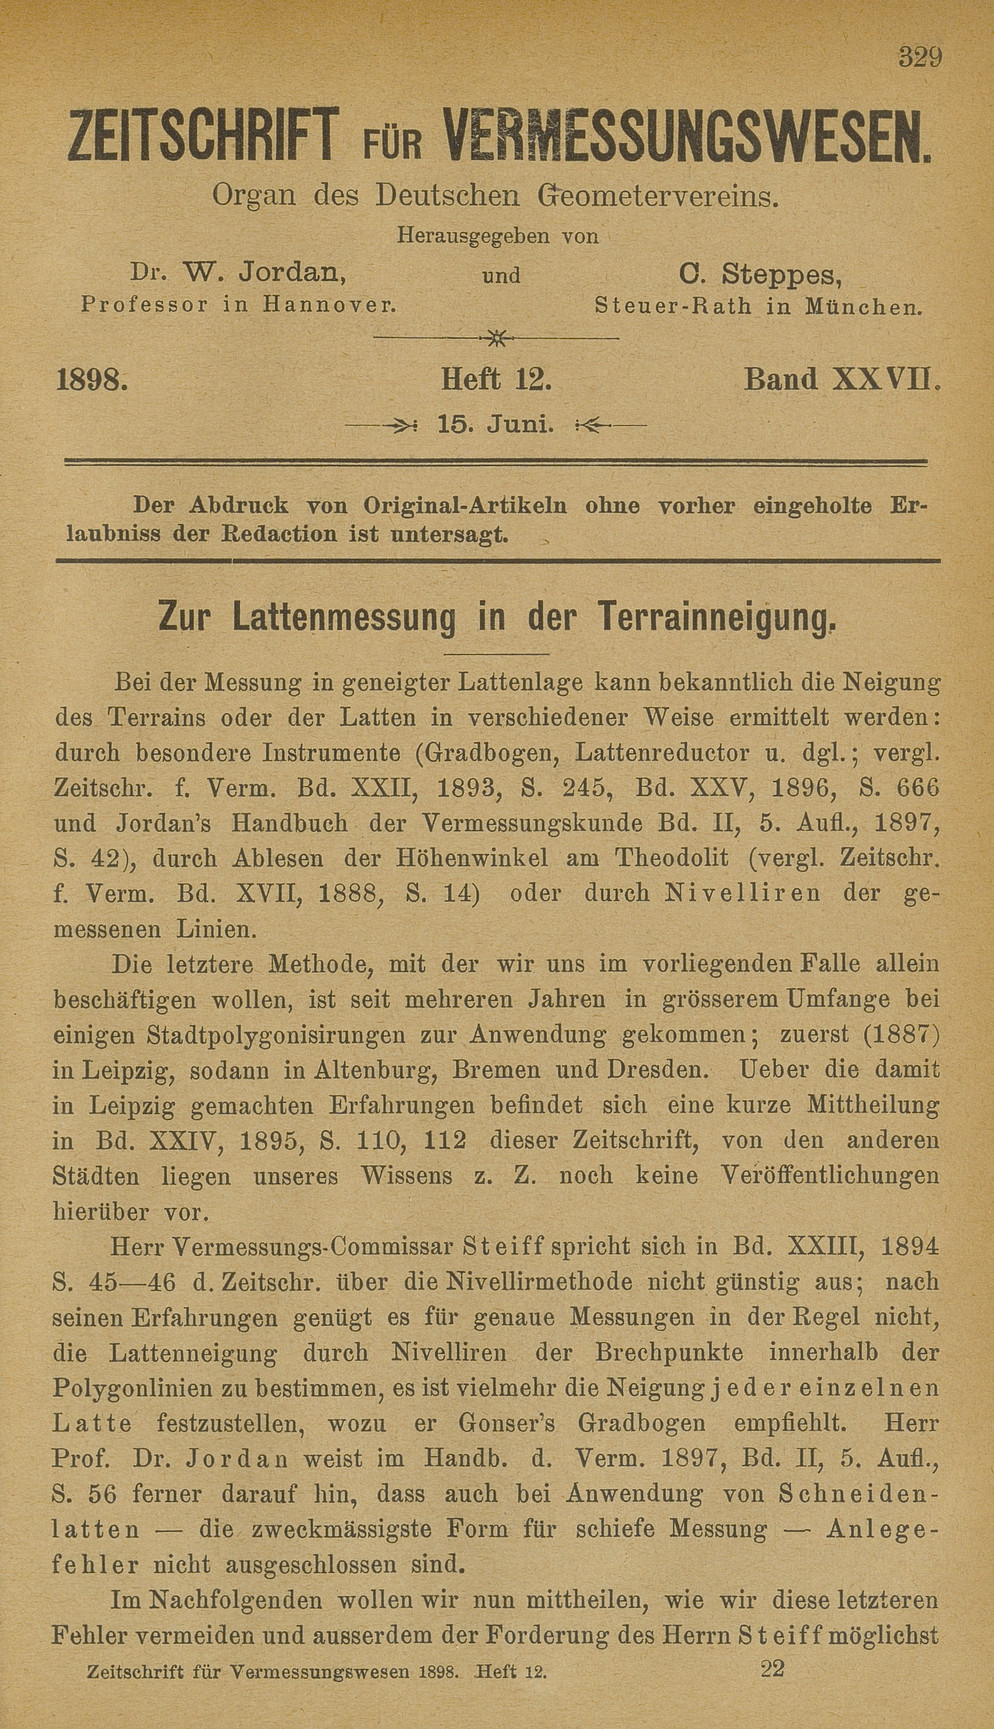 Zeitschrift für Vermessungswesen, Heft 12, Band XXVII